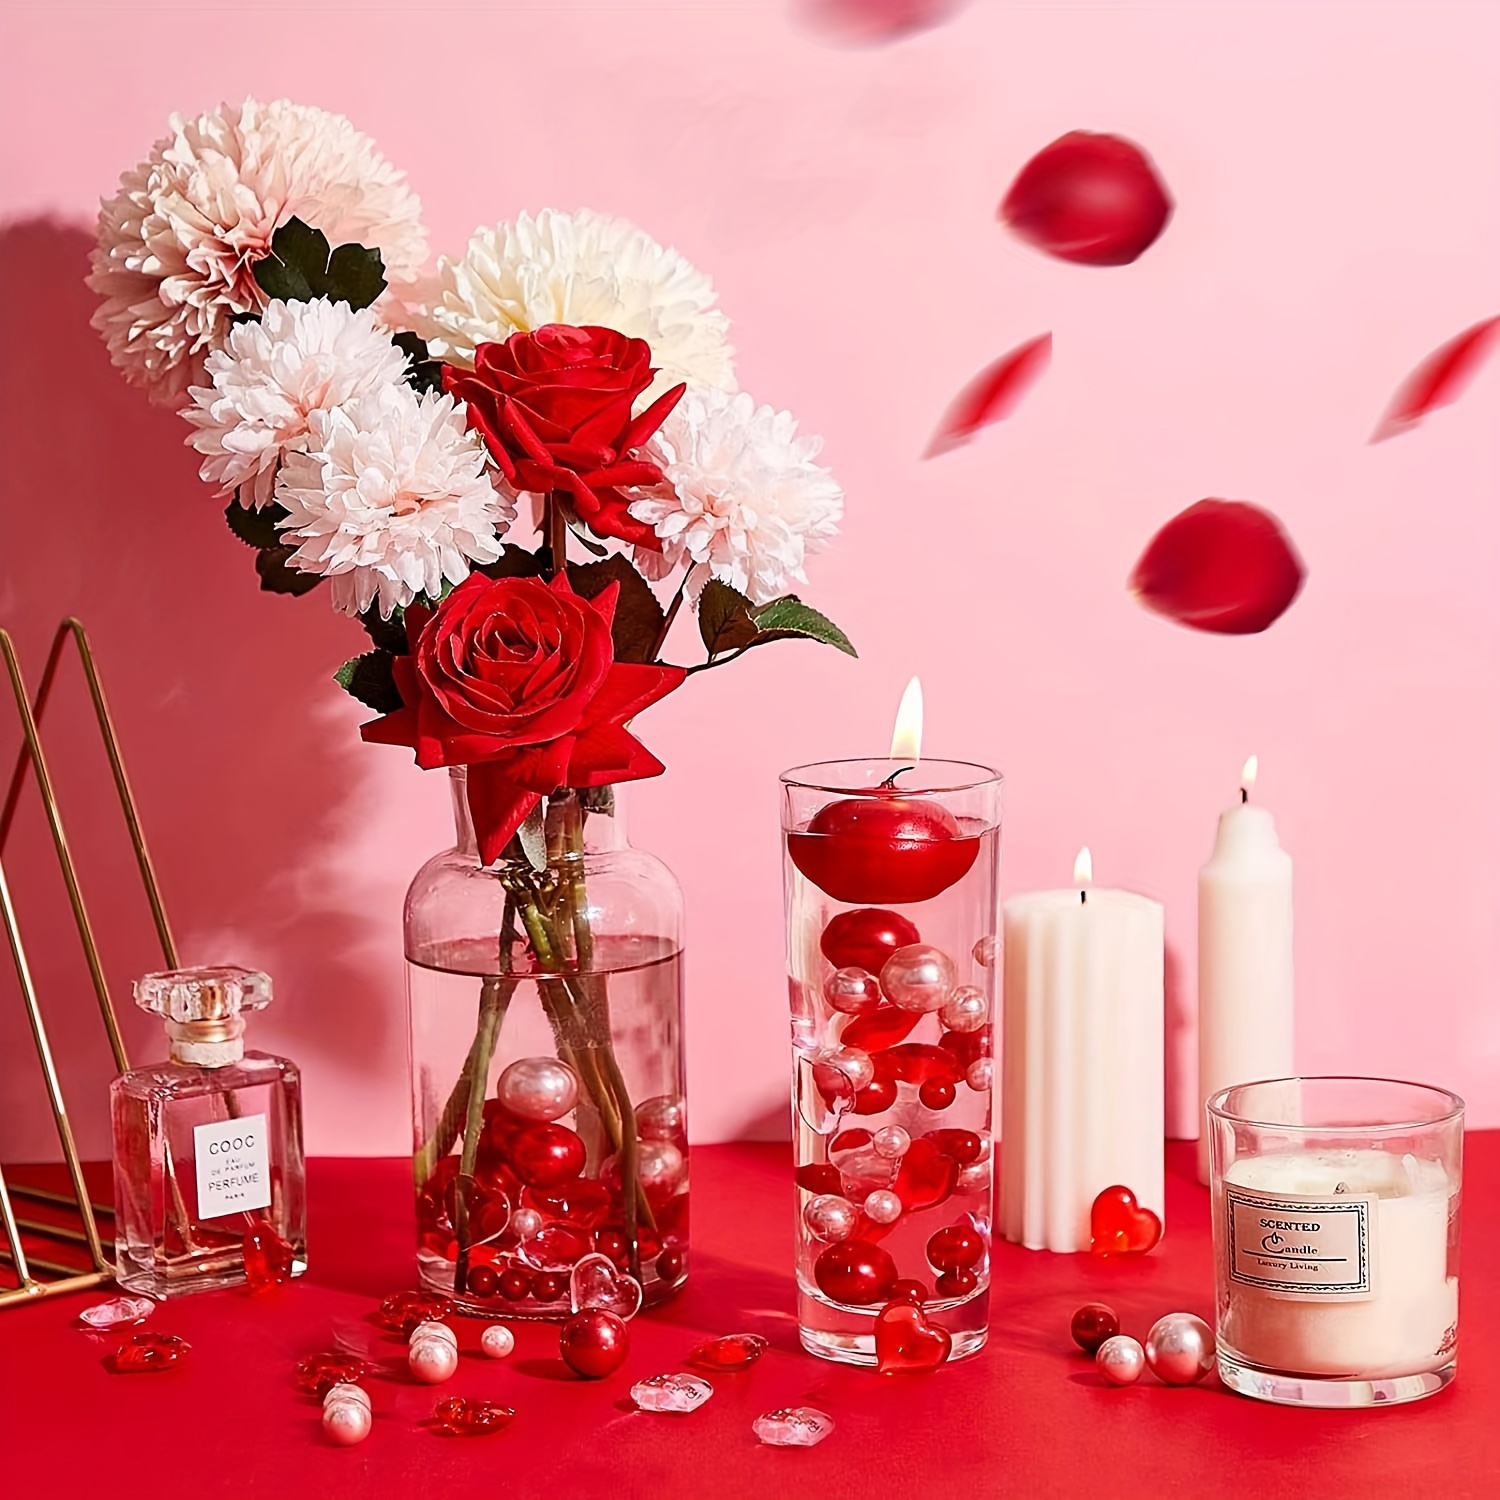 14. Februar Auf Würfel Kalender, Rote Rose Blumen Und Kerzen, Dekoration  Für Den Valentinstag Lizenzfreie Fotos, Bilder und Stock Fotografie. Image  68708272.